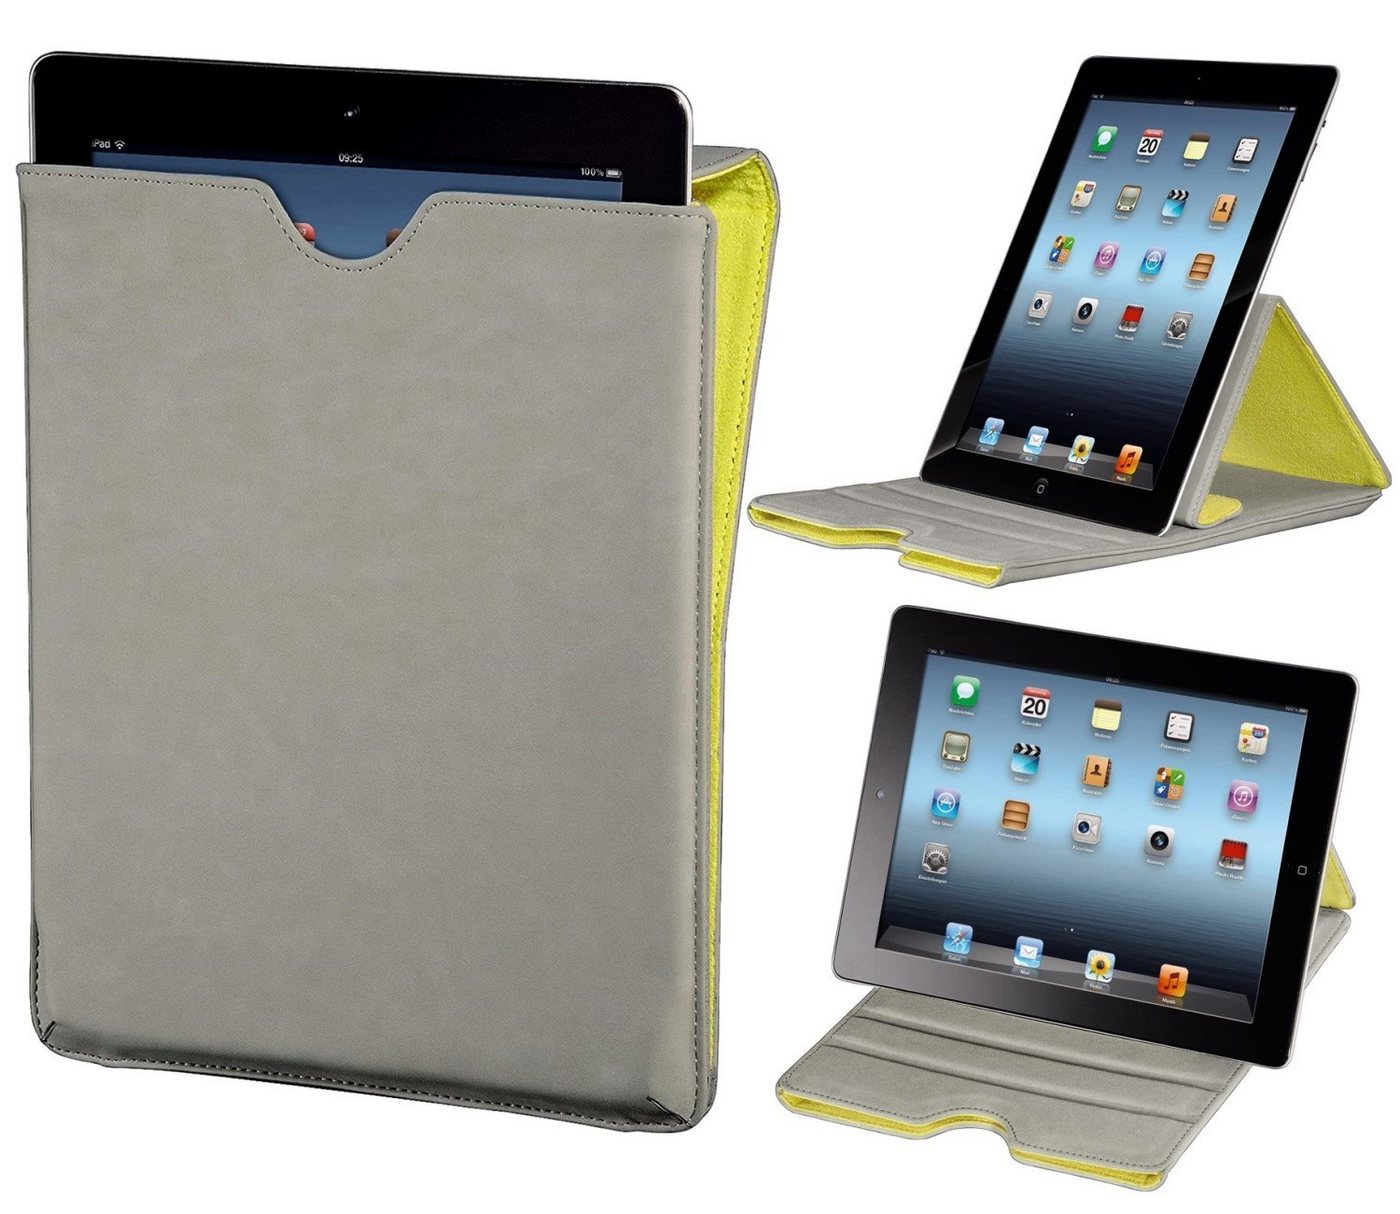 Hama Tablet-Hülle Tasche Ständer Cover Schutz-Hülle Case Grau, Klapp-Tasche für iPad Tablet PC 9,4 9,7" 10" 10,1" 10,2" 10,4" 10,5"" von Hama